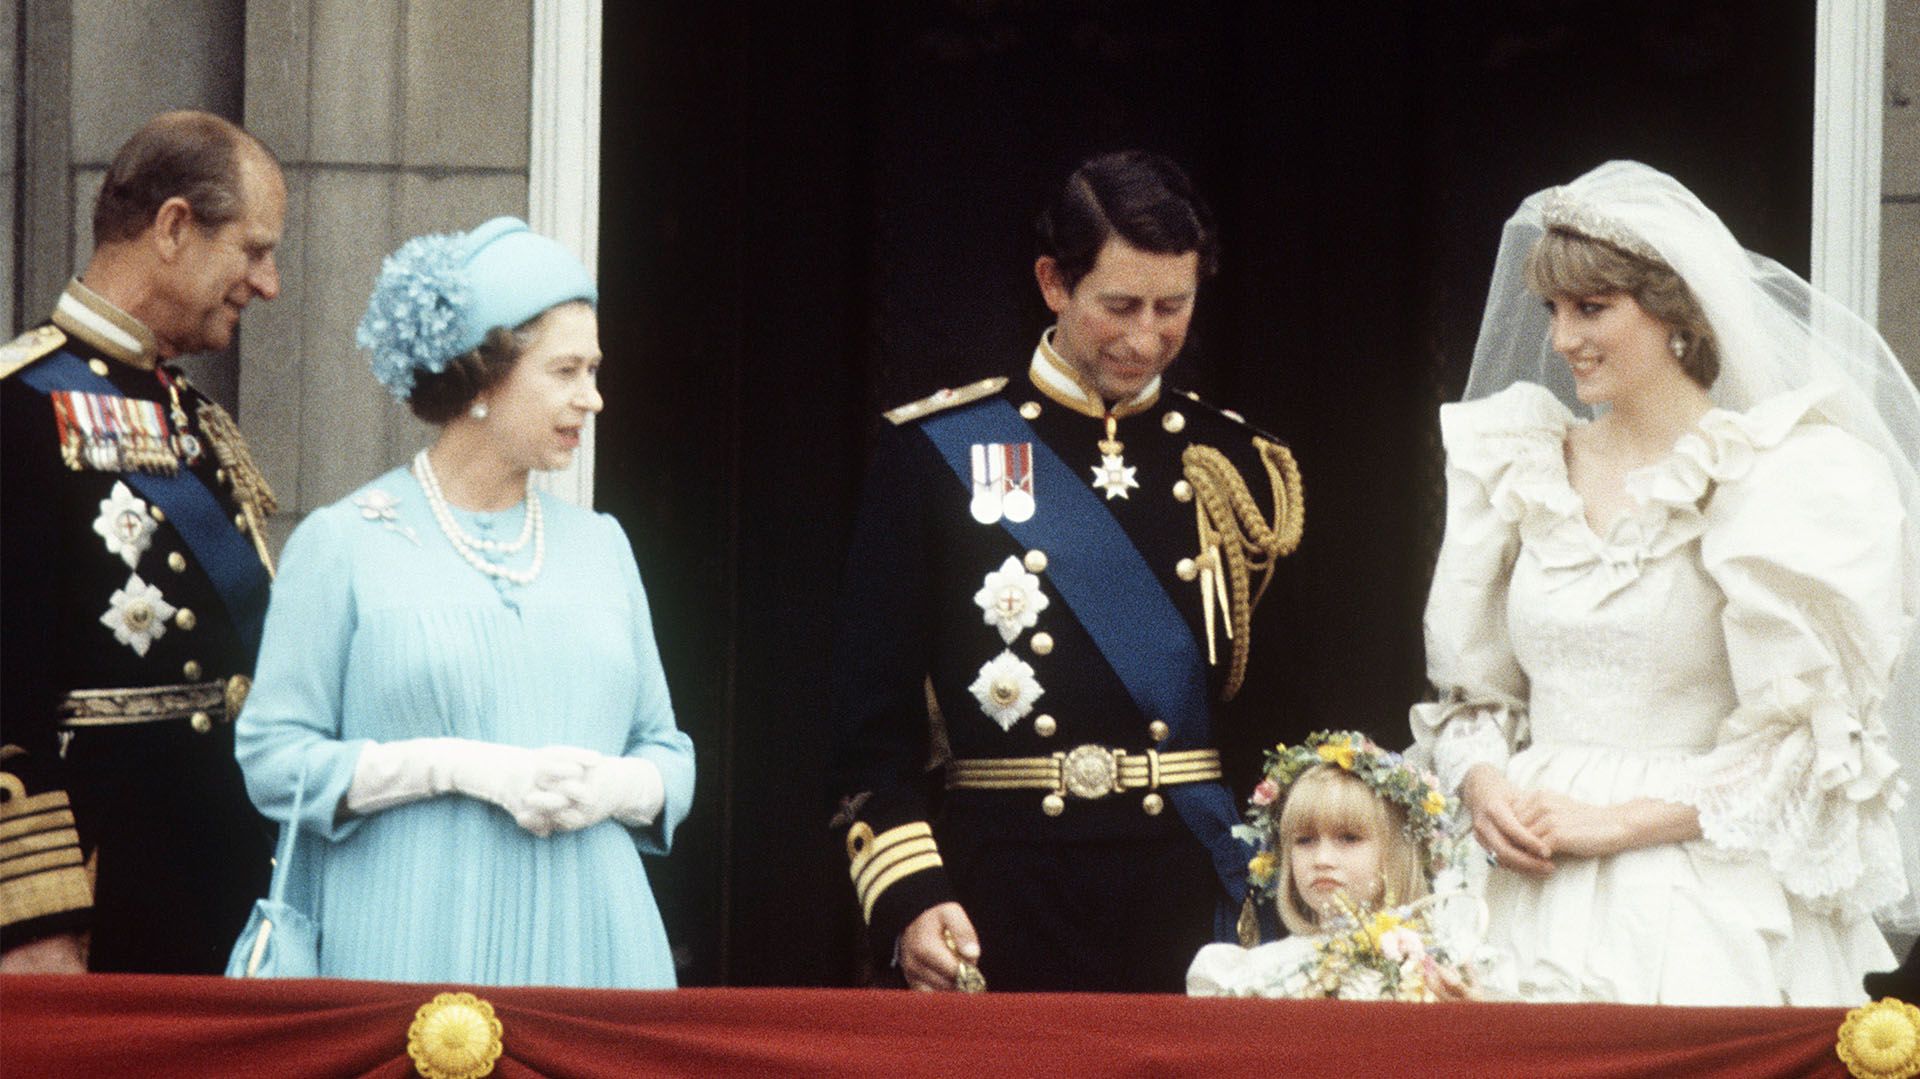 El Príncipe Felipe, la Reina Isabel II, el Príncipe Carlos y la Princesa Diana en la Boda del Príncipe Carlos y Lady Di en Londres, el 29 de julio de 1981 (Foto de Shutterstock (88888bd))